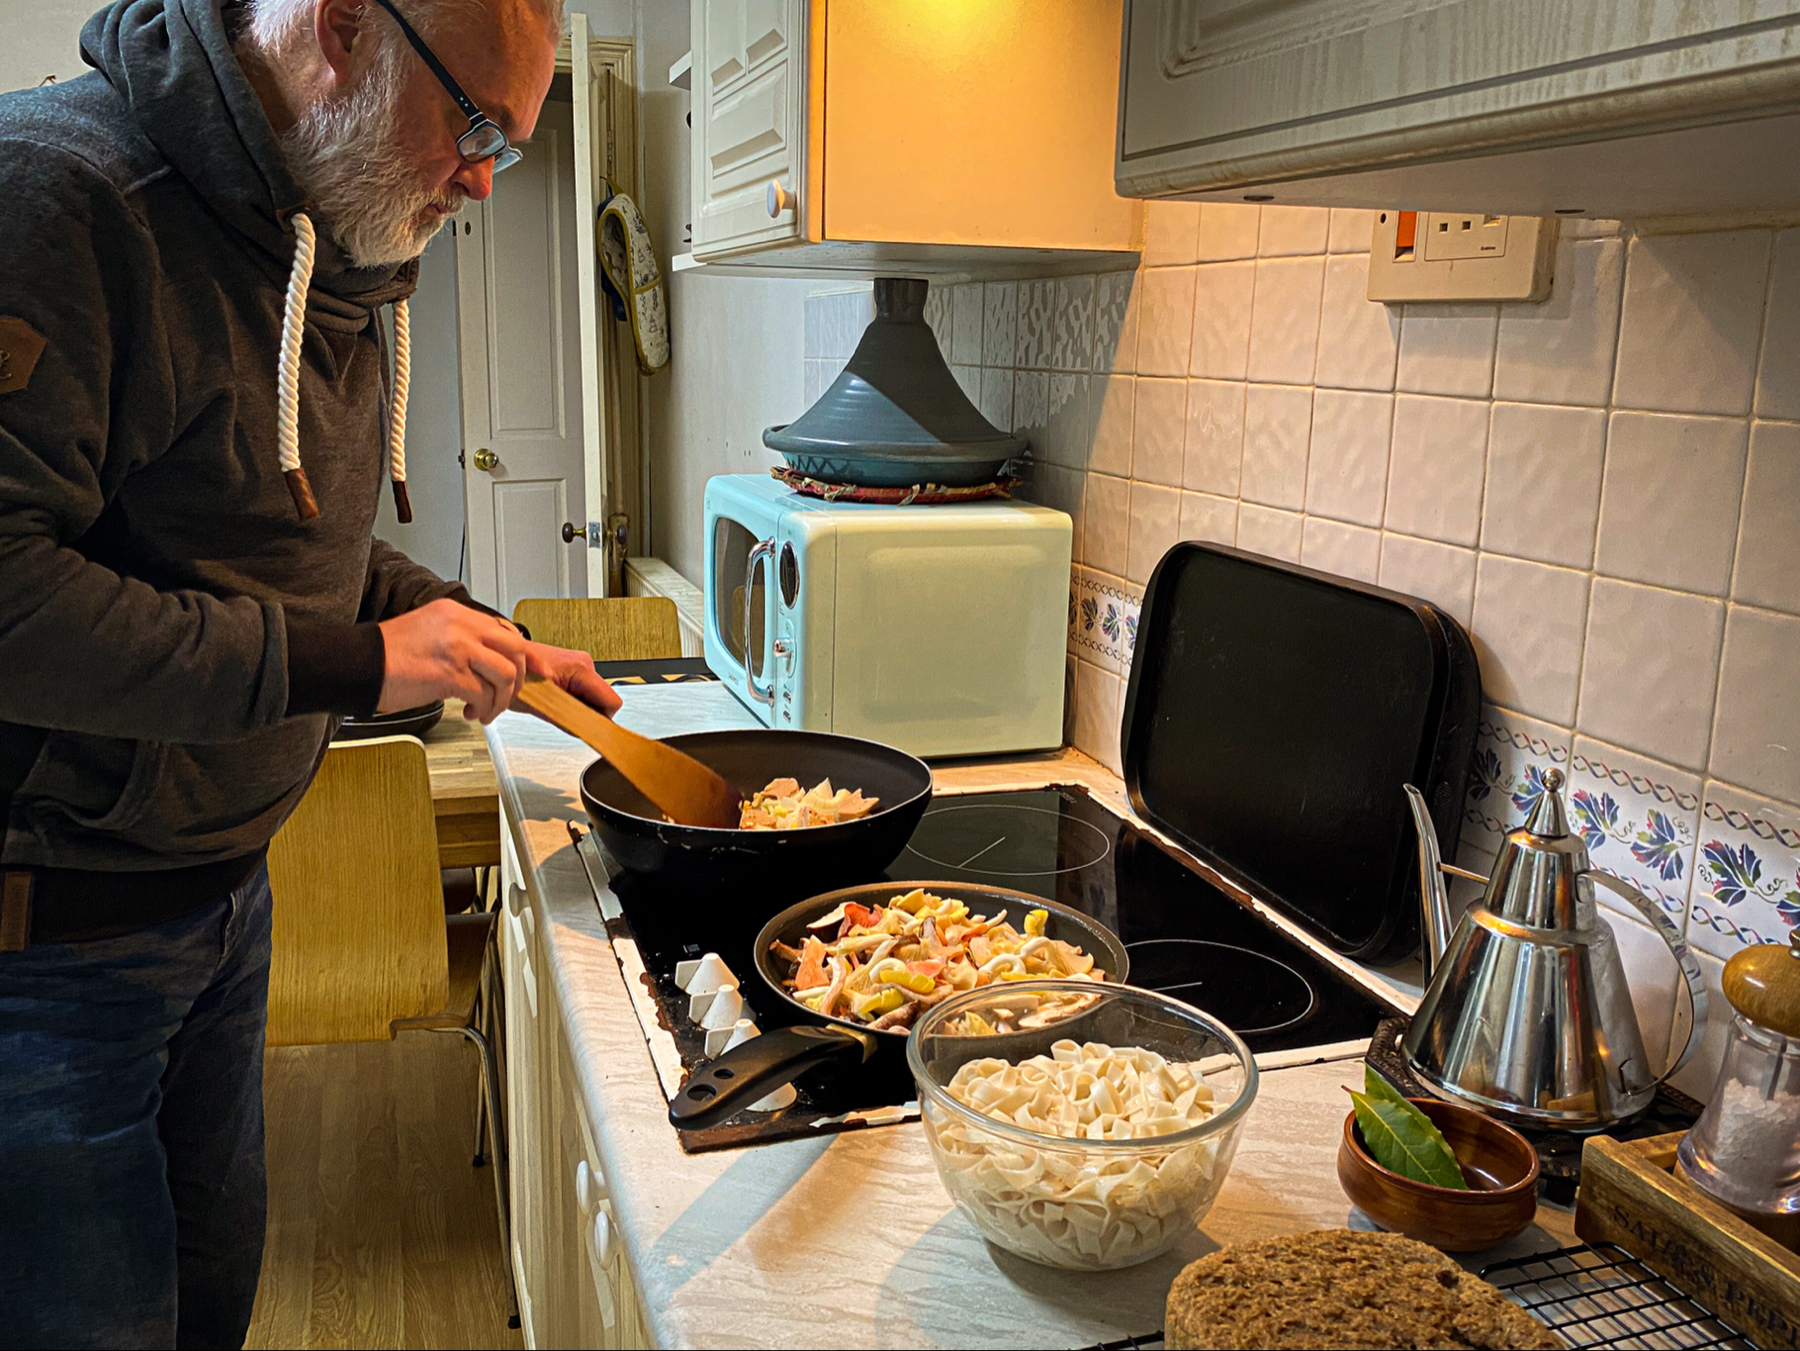 Kitchen scene of a bearded man stir-frying food in a wok